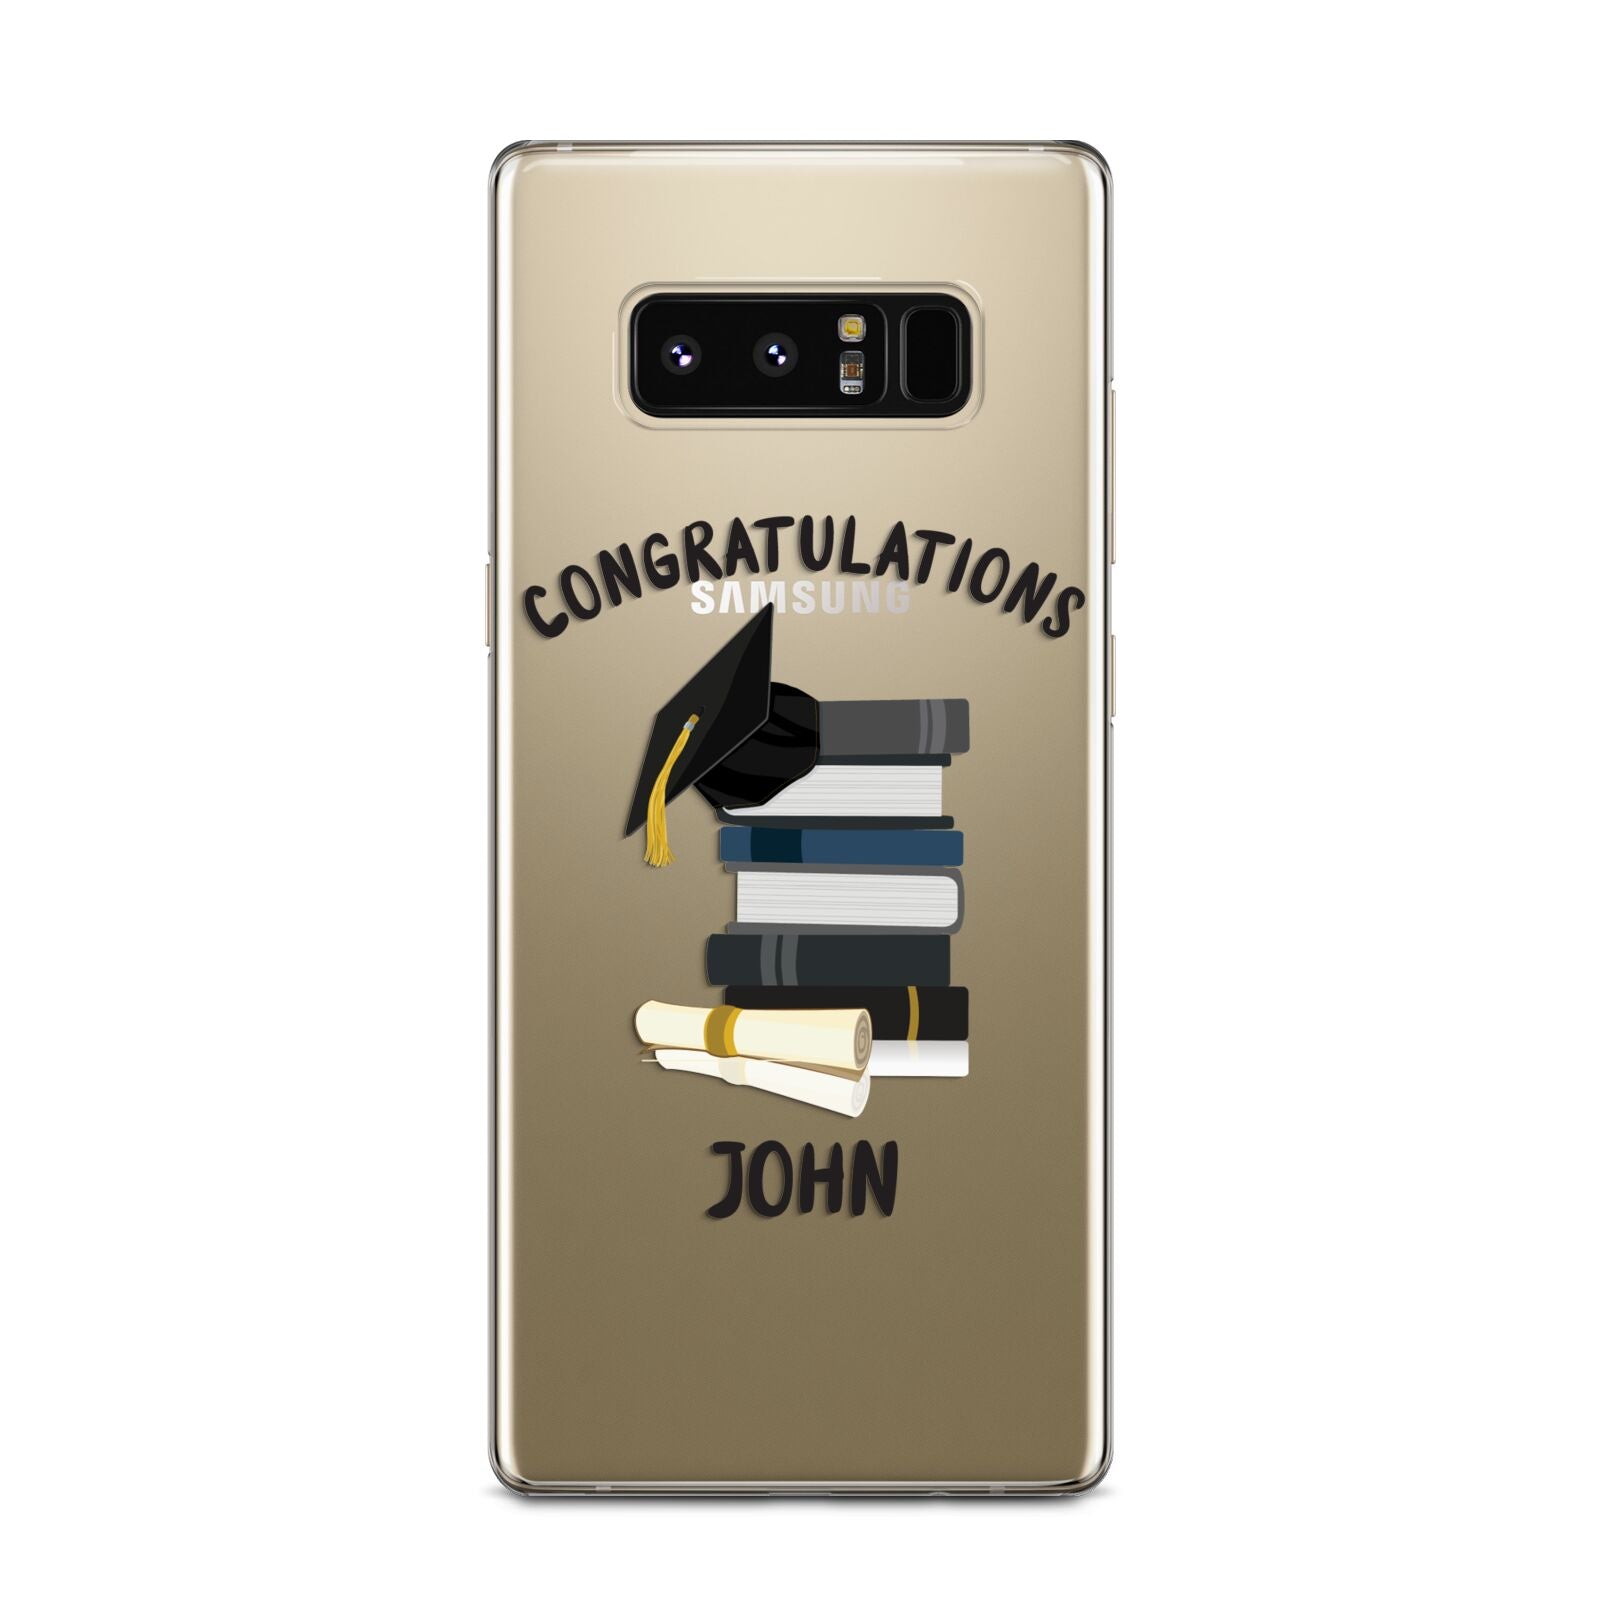 Congratulations Graduate Samsung Galaxy Note 8 Case